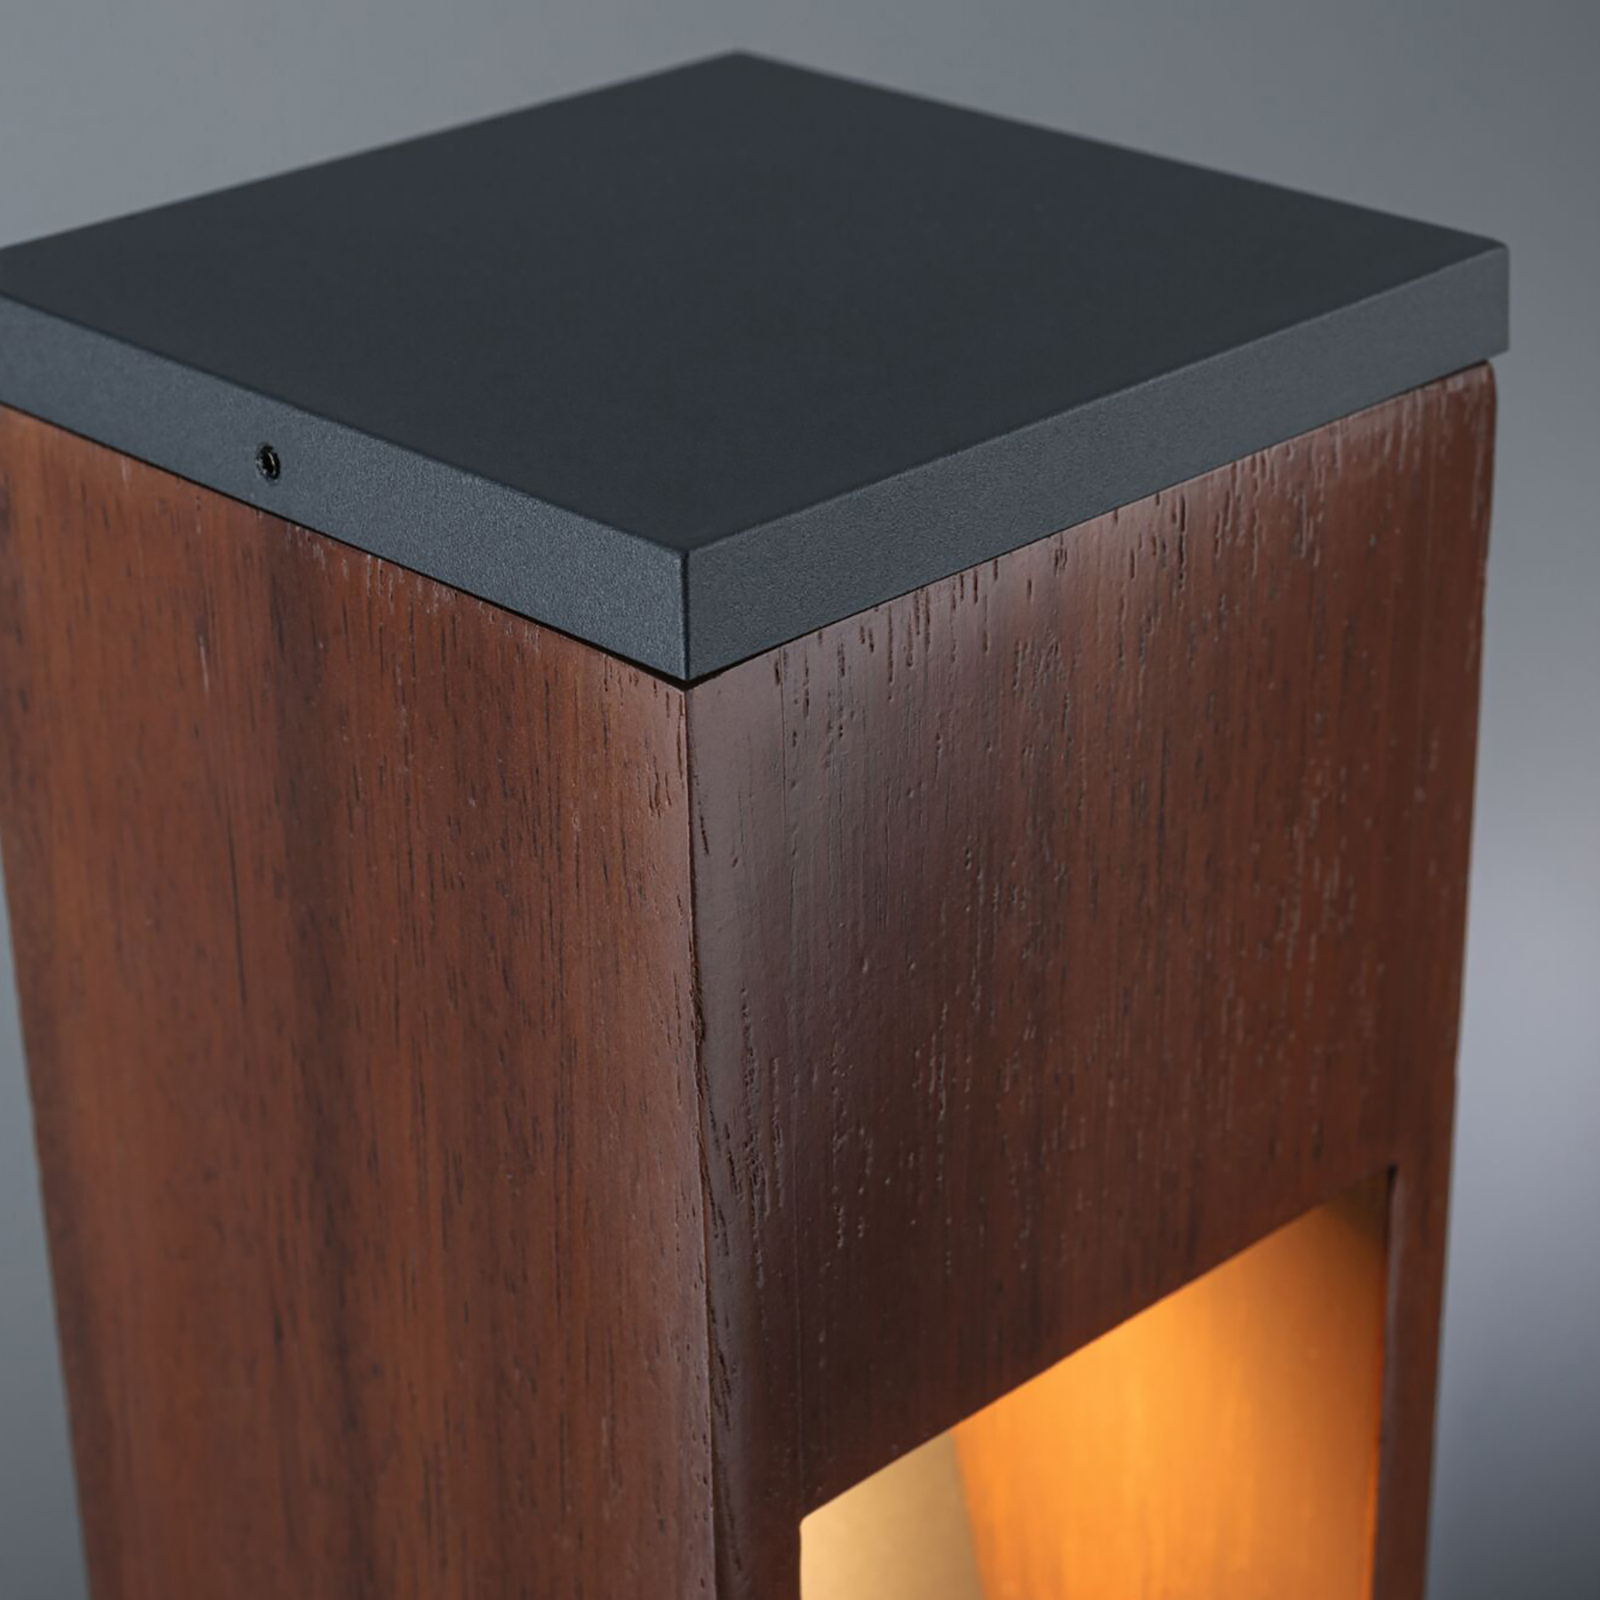 Paulmann LED sokkellamp hout, hoogte 40 cm